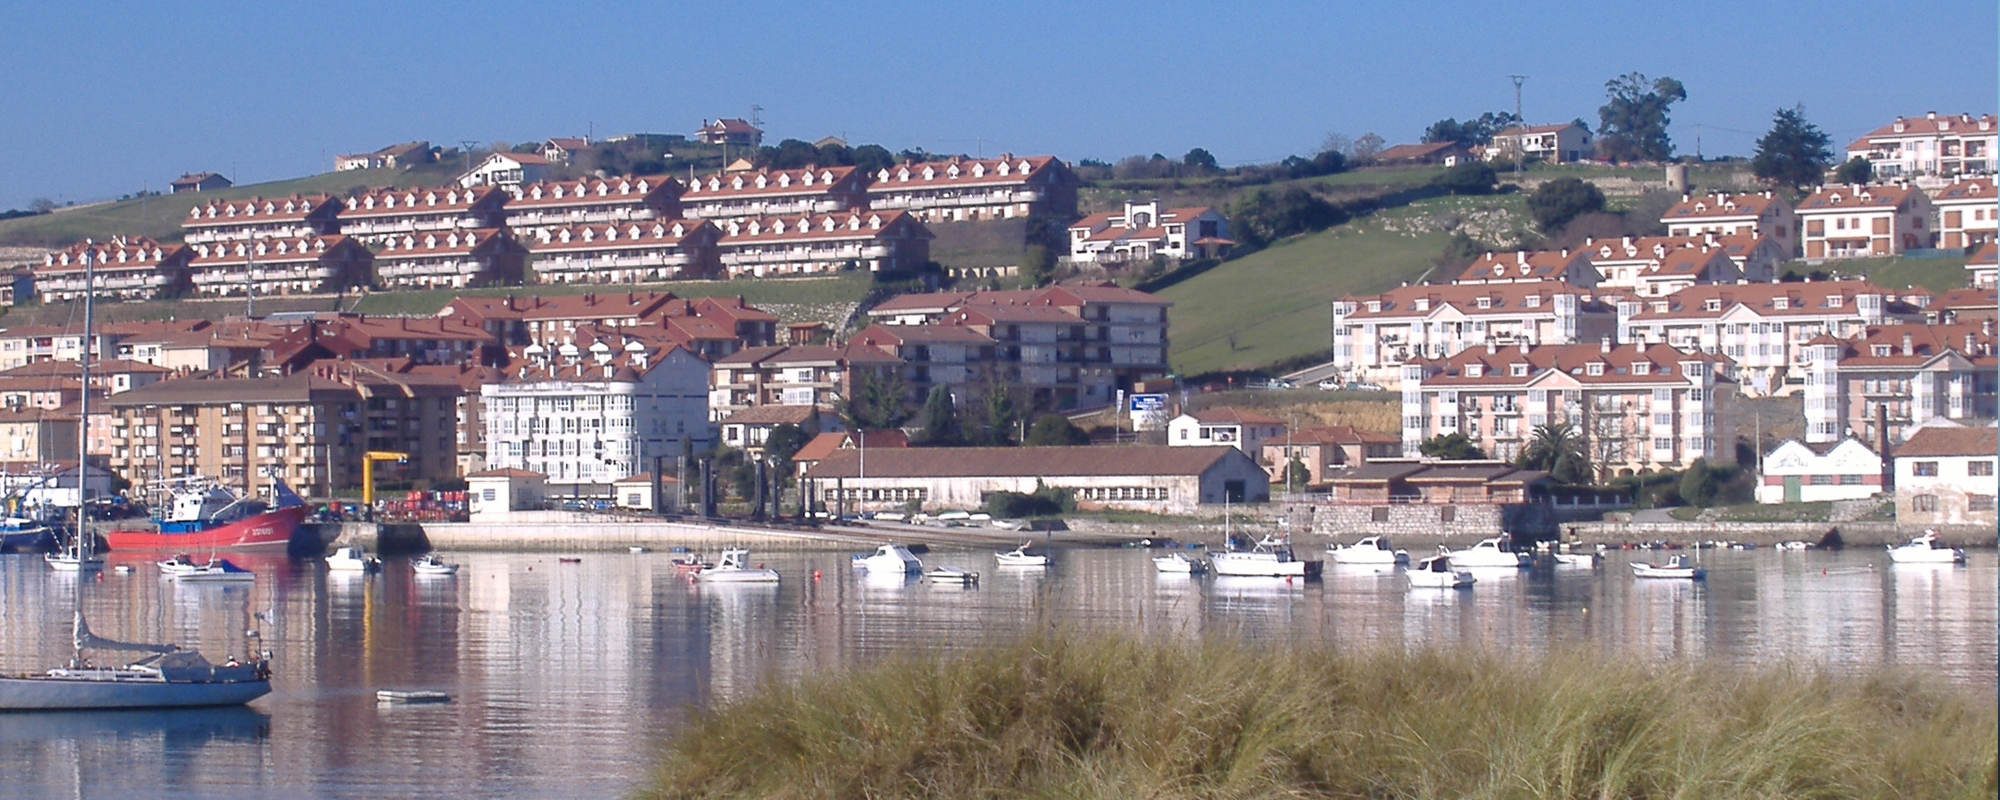 Inmobiliaria en Cantabria, venta y alquiler de inmuebles